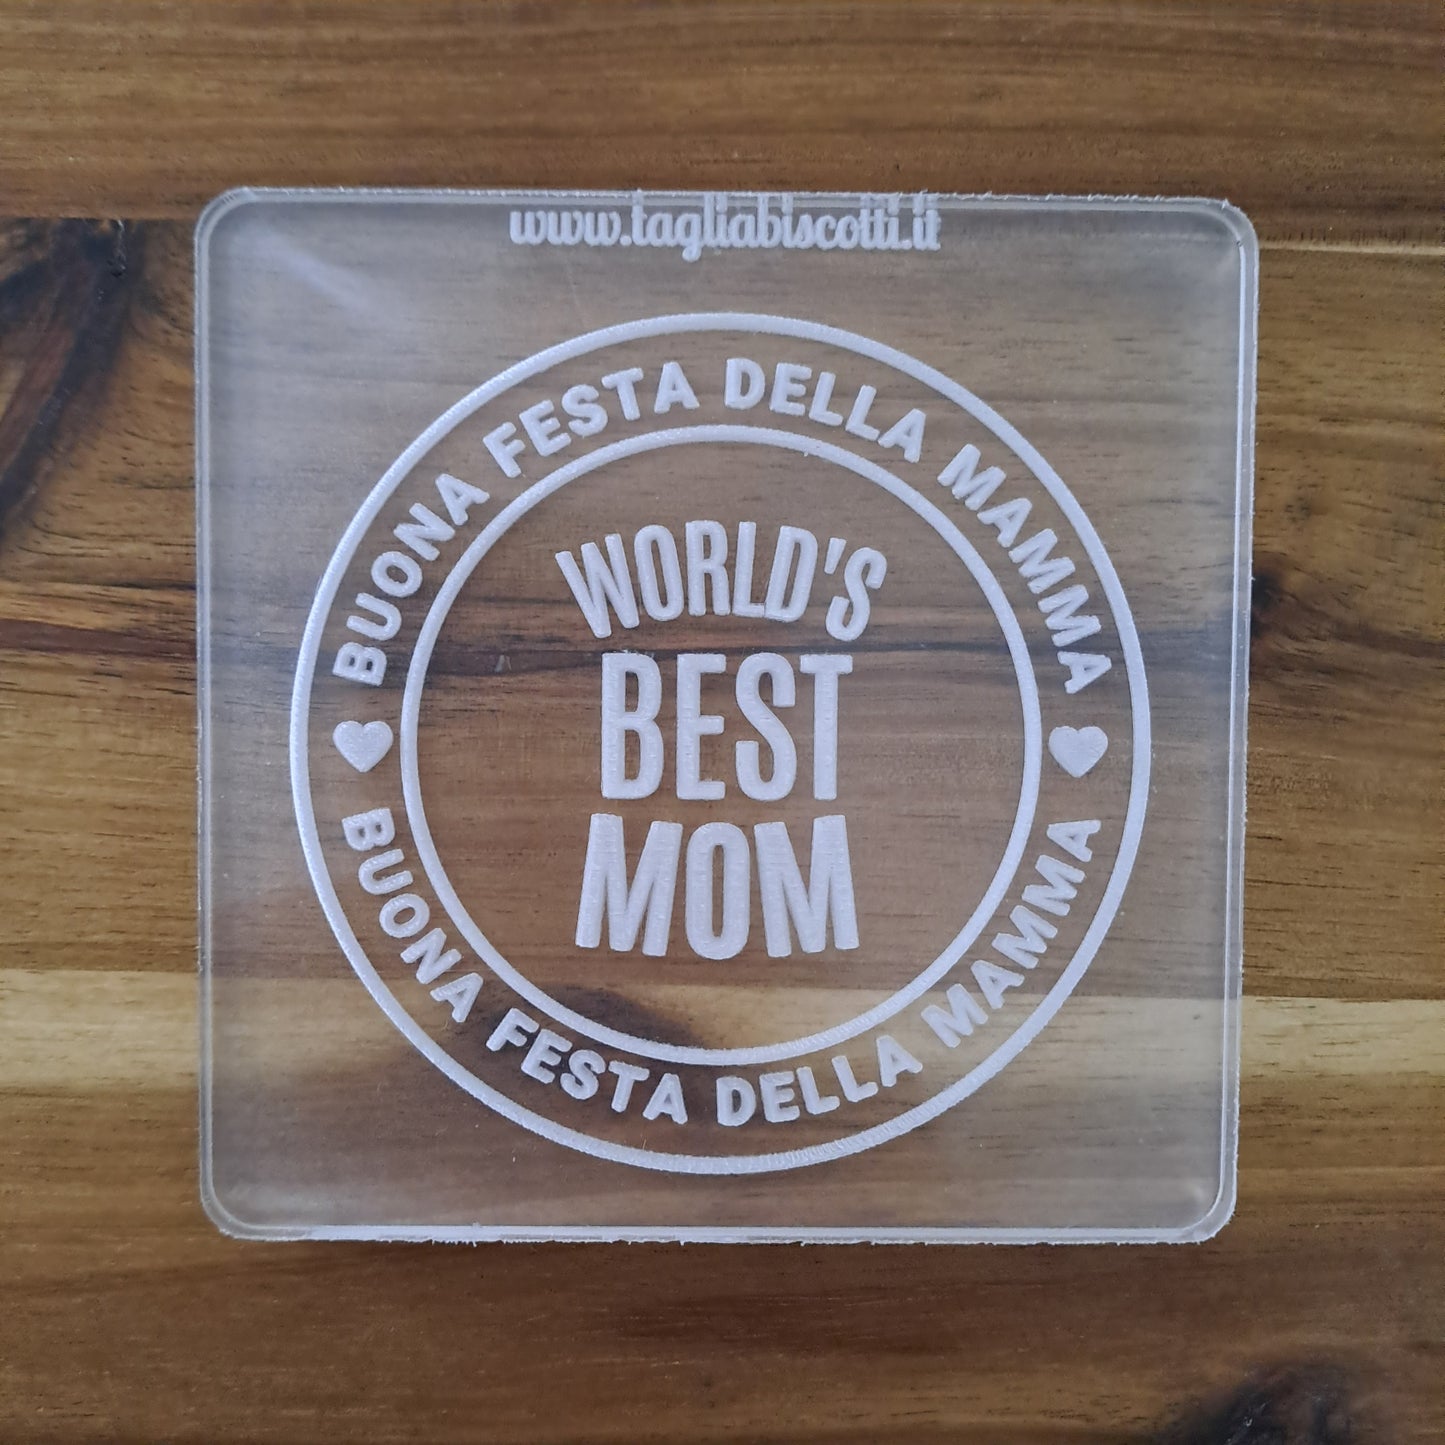 Stampo in acrilico -  Buona Festa della Mamma "Wold's Best Mom" - Cookies Cutter - Formina per biscotti o decorazioni torte